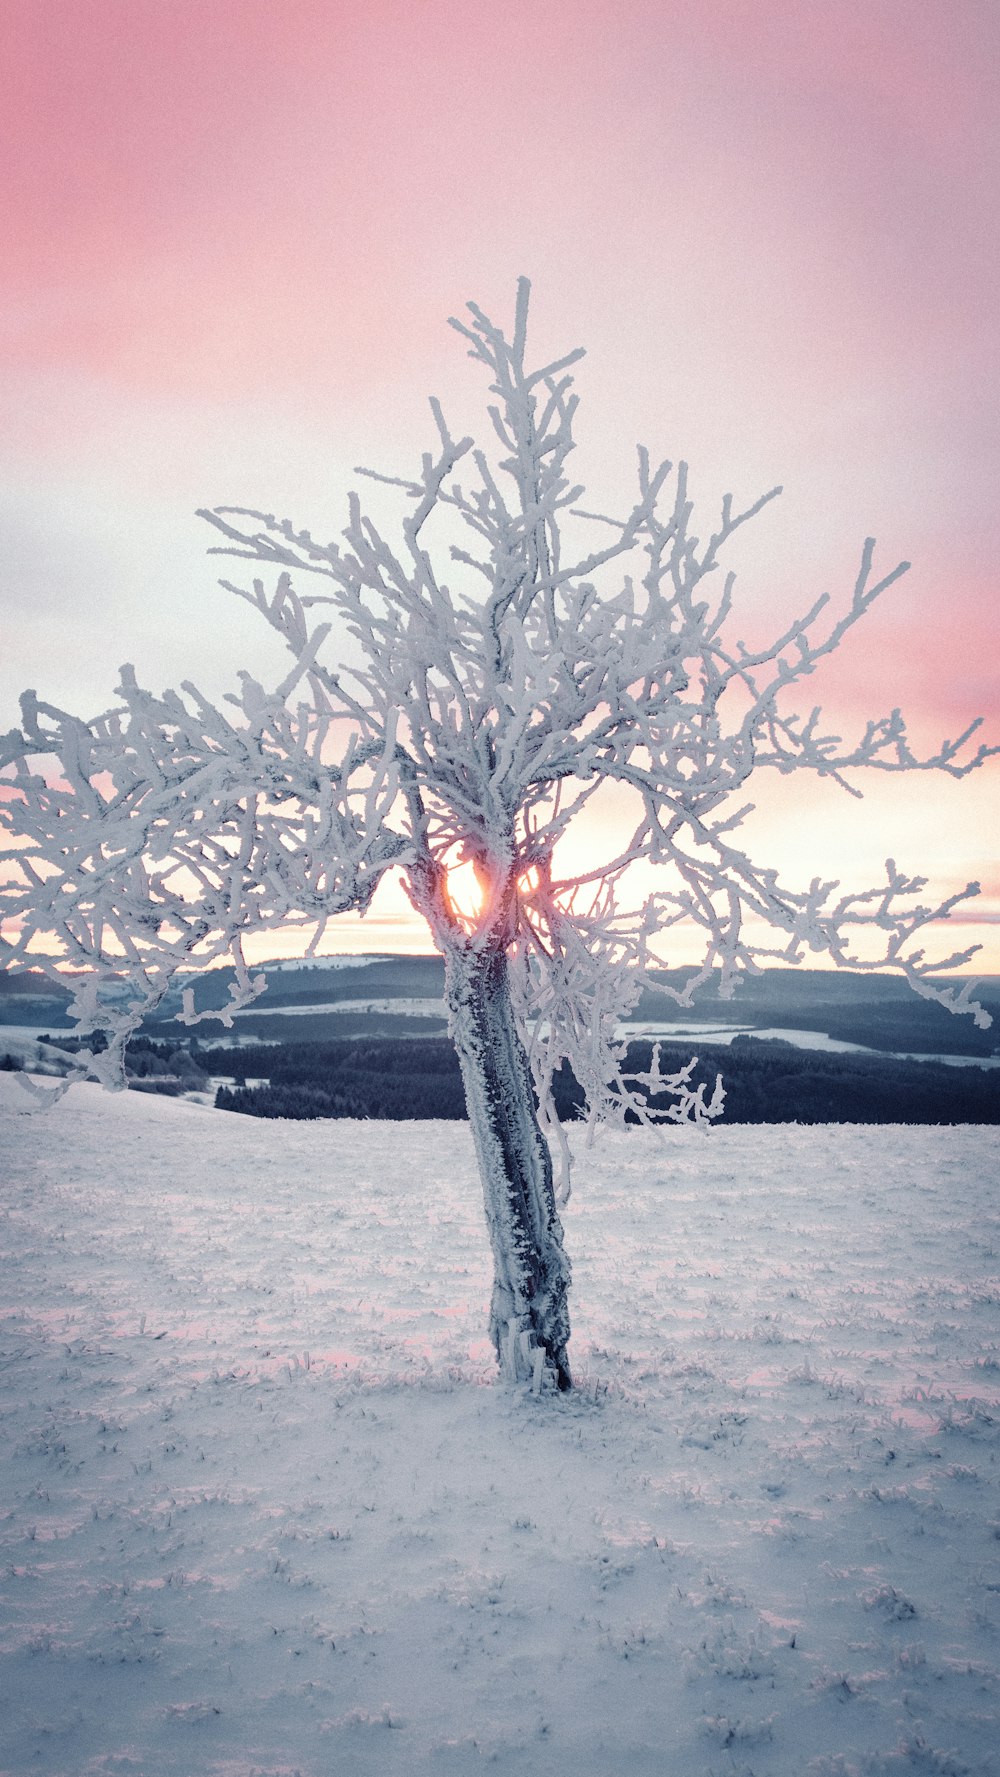 árvore coberta de neve durante o dia